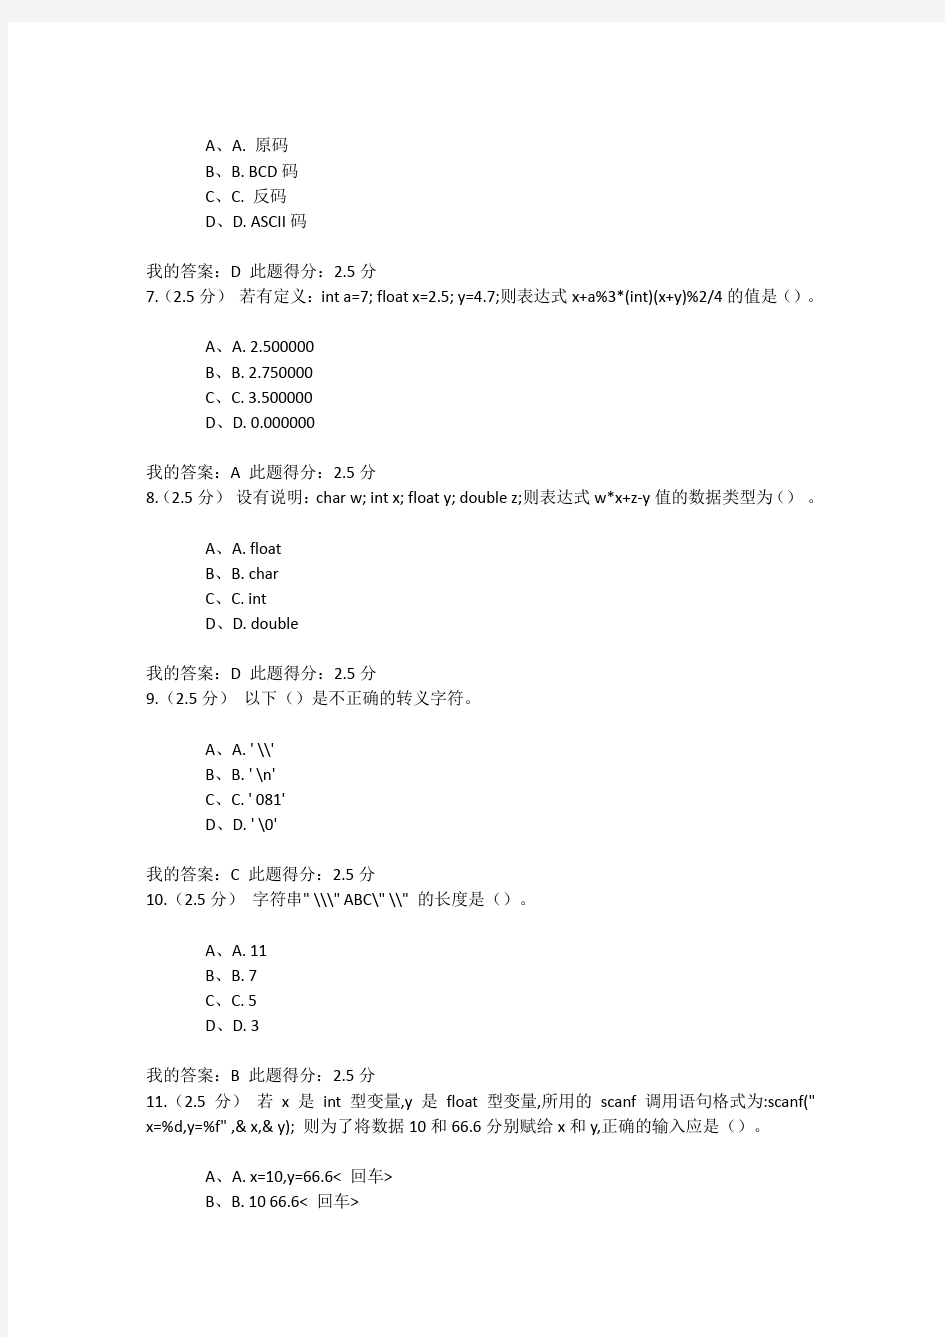 中国石油大学C语言程序设计第一册在线作业答案